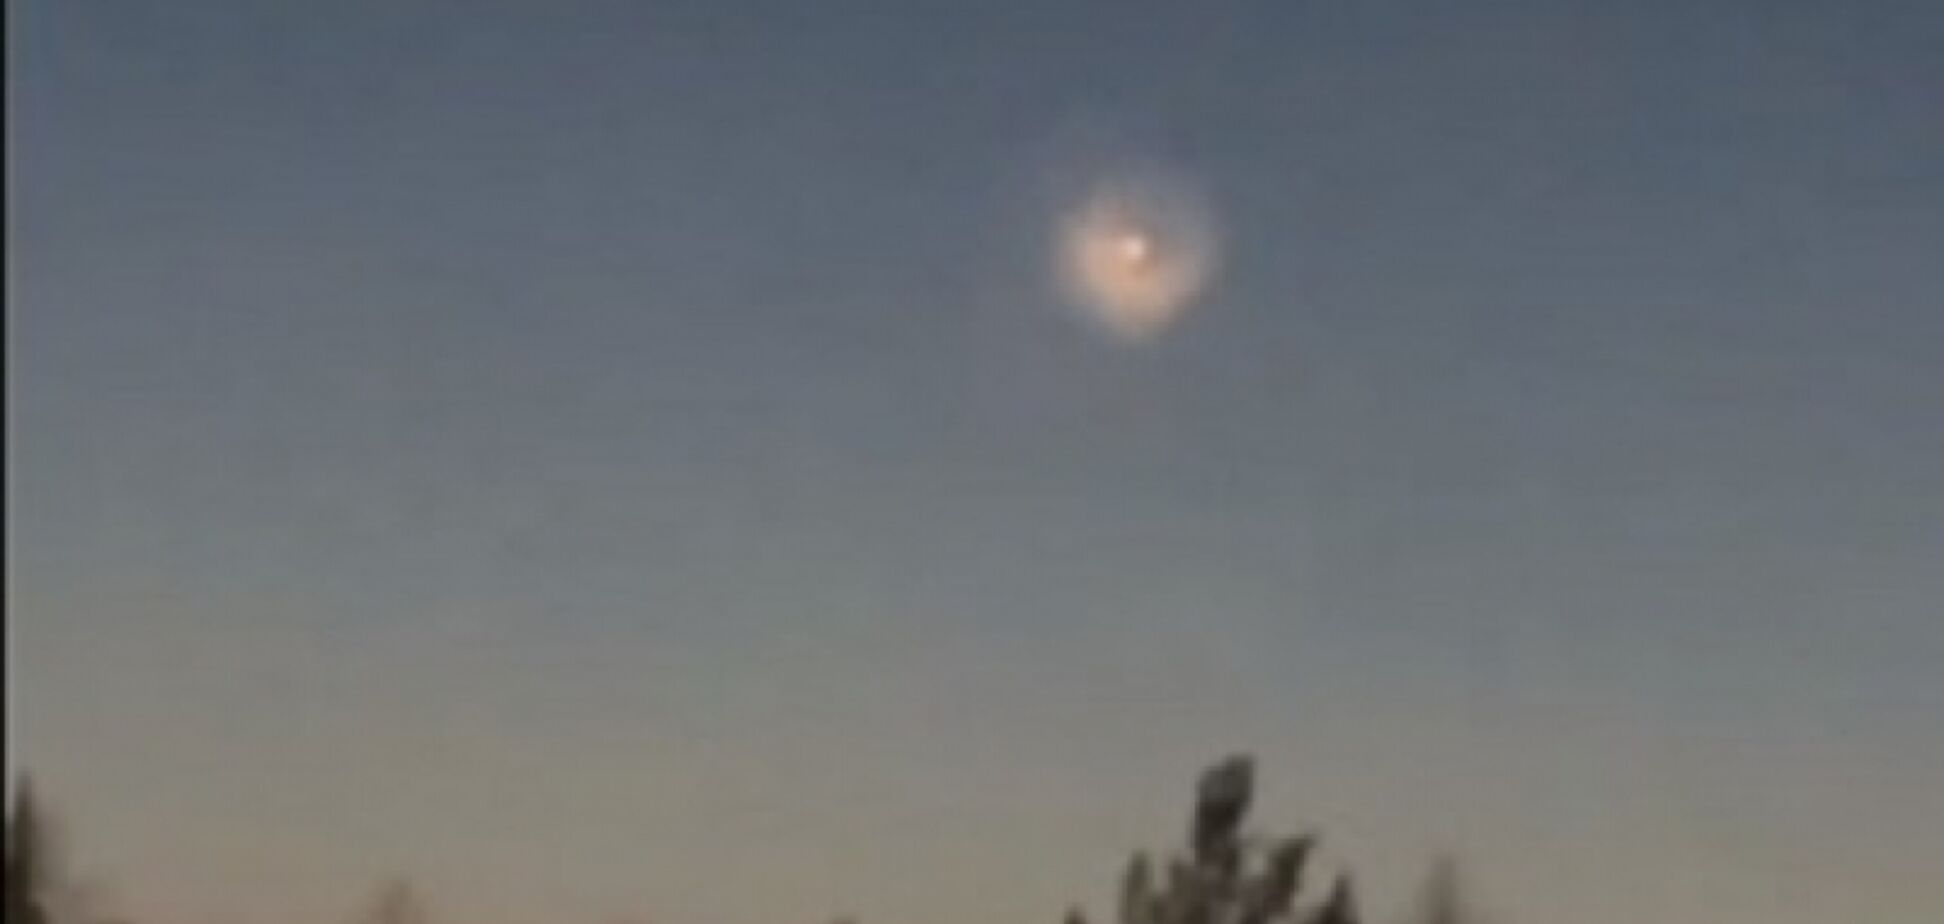 НЛО у формі пончика зняли в небі над Одесою (ілюстрація)